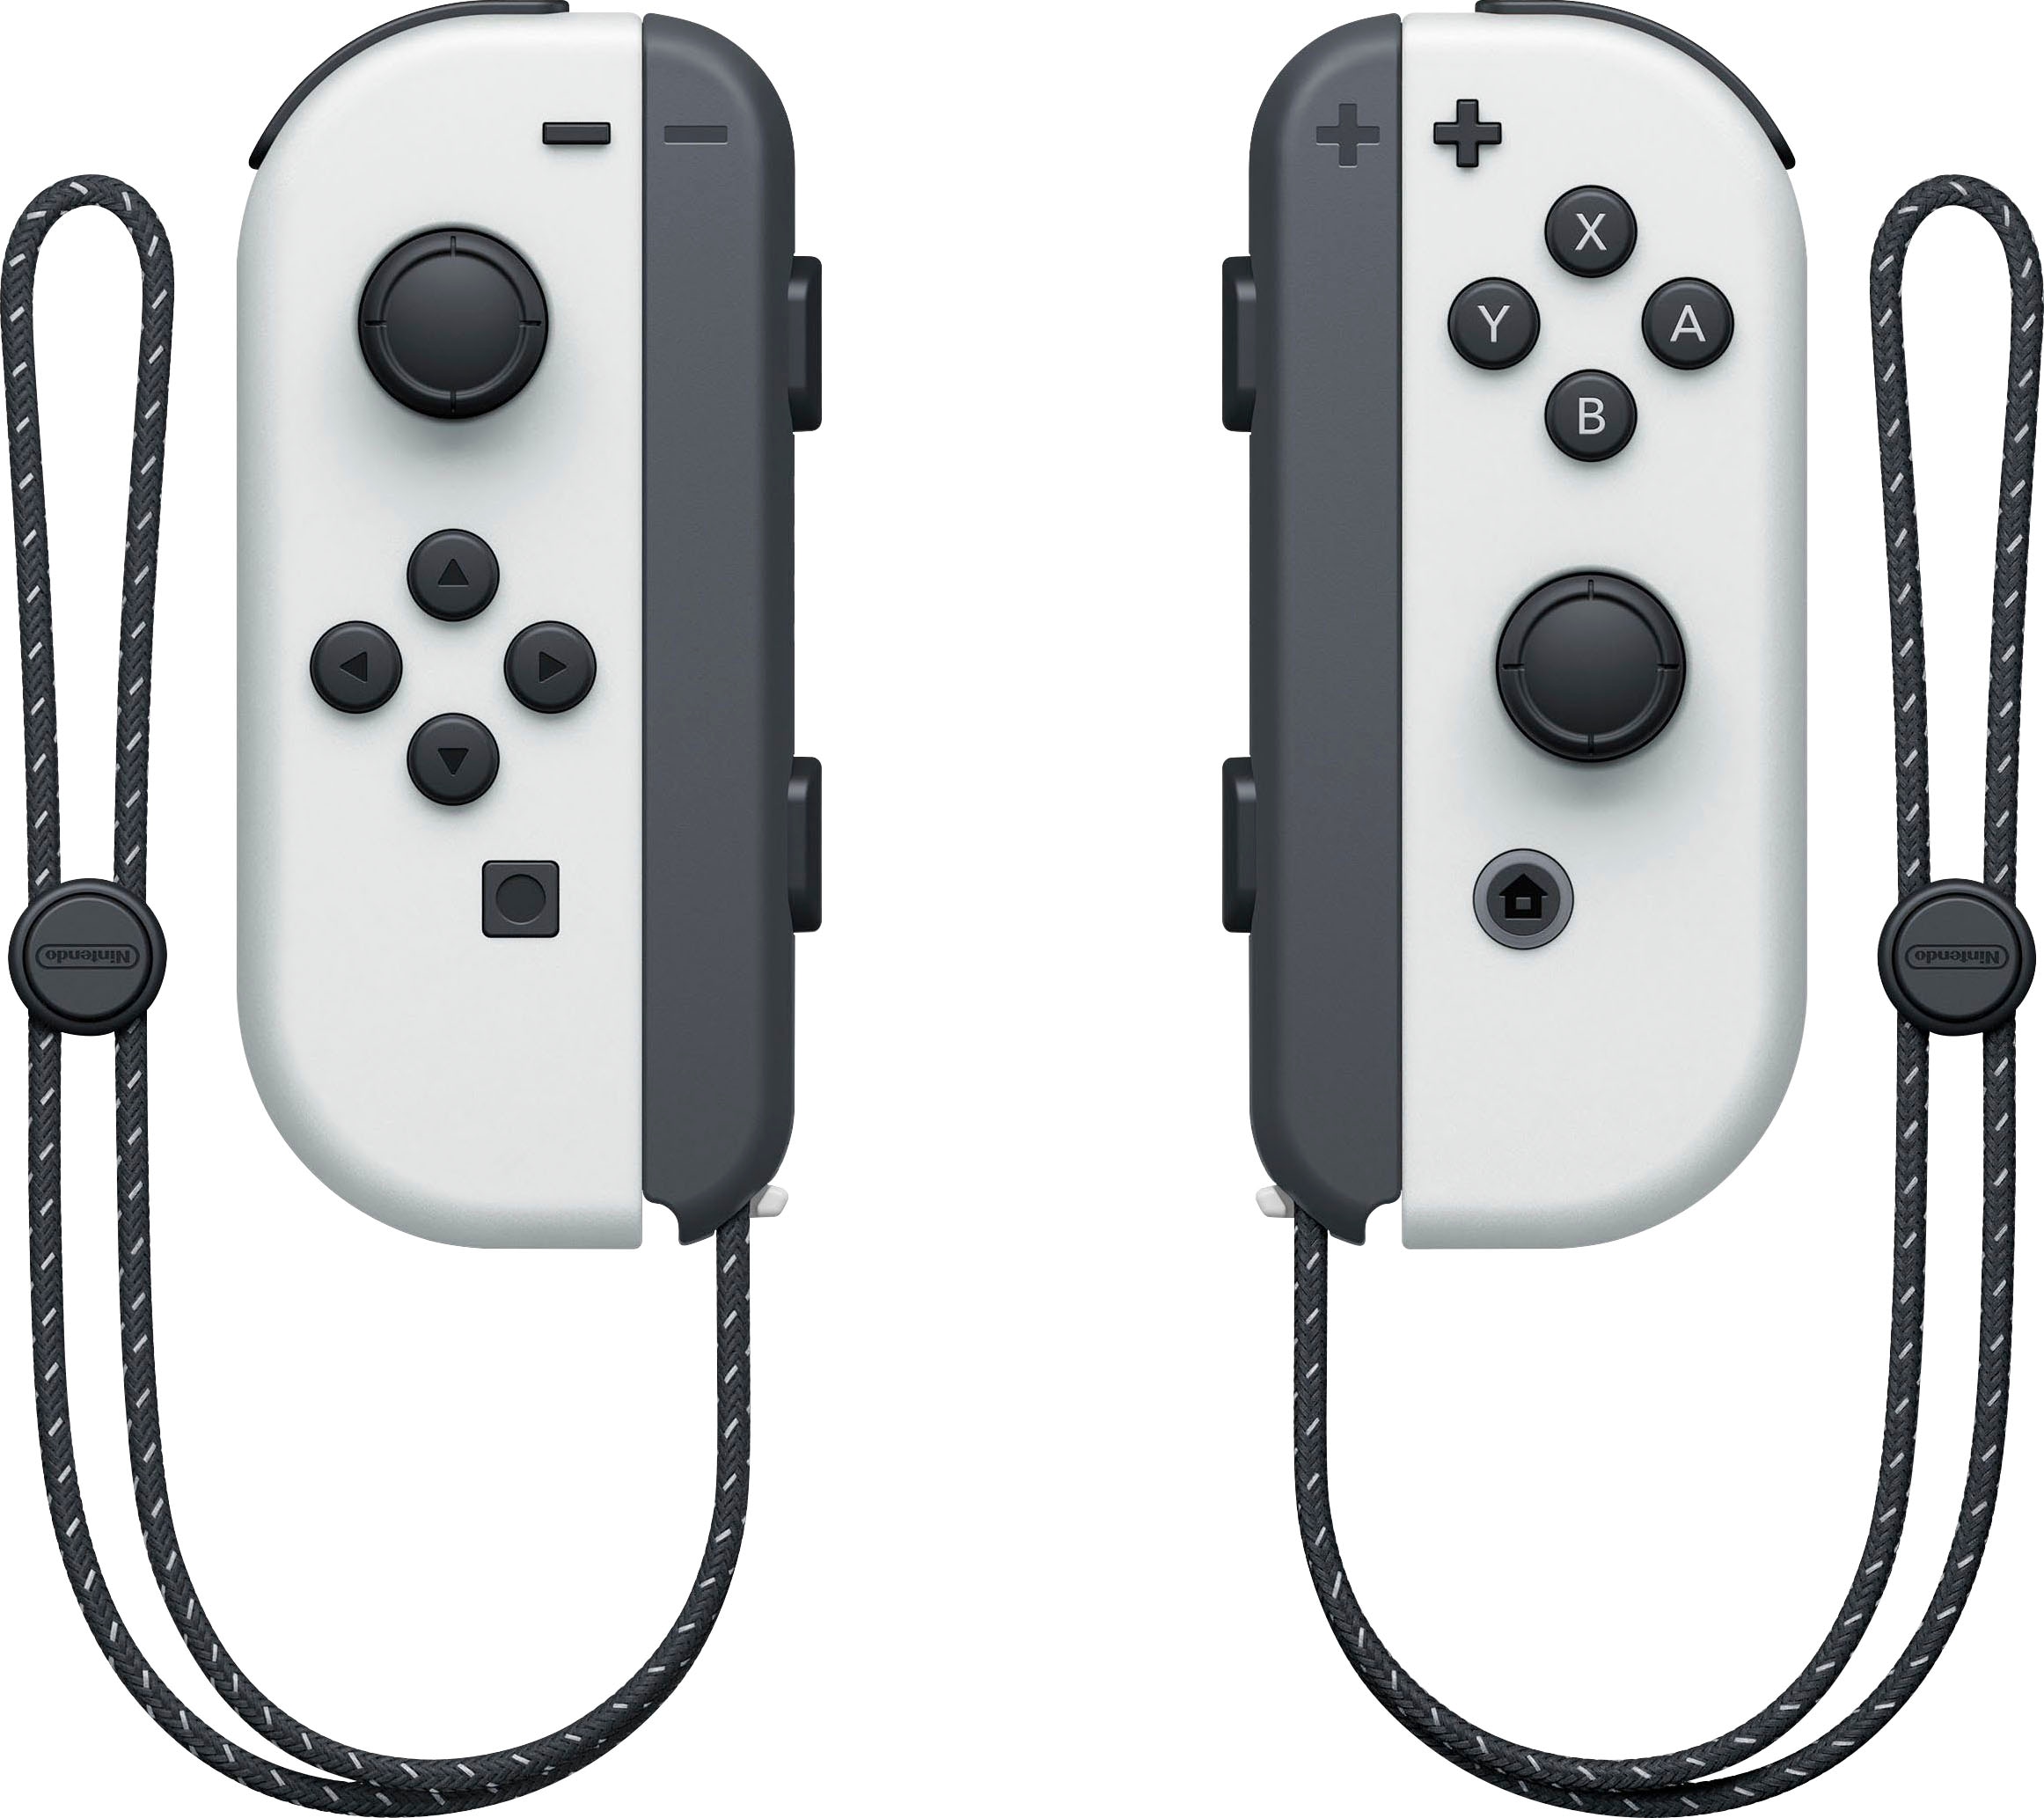 Nintendo Switch Konsolen-Set »Switch OLED«, inkl. The Legend of Zelda: Skyward Sword HD